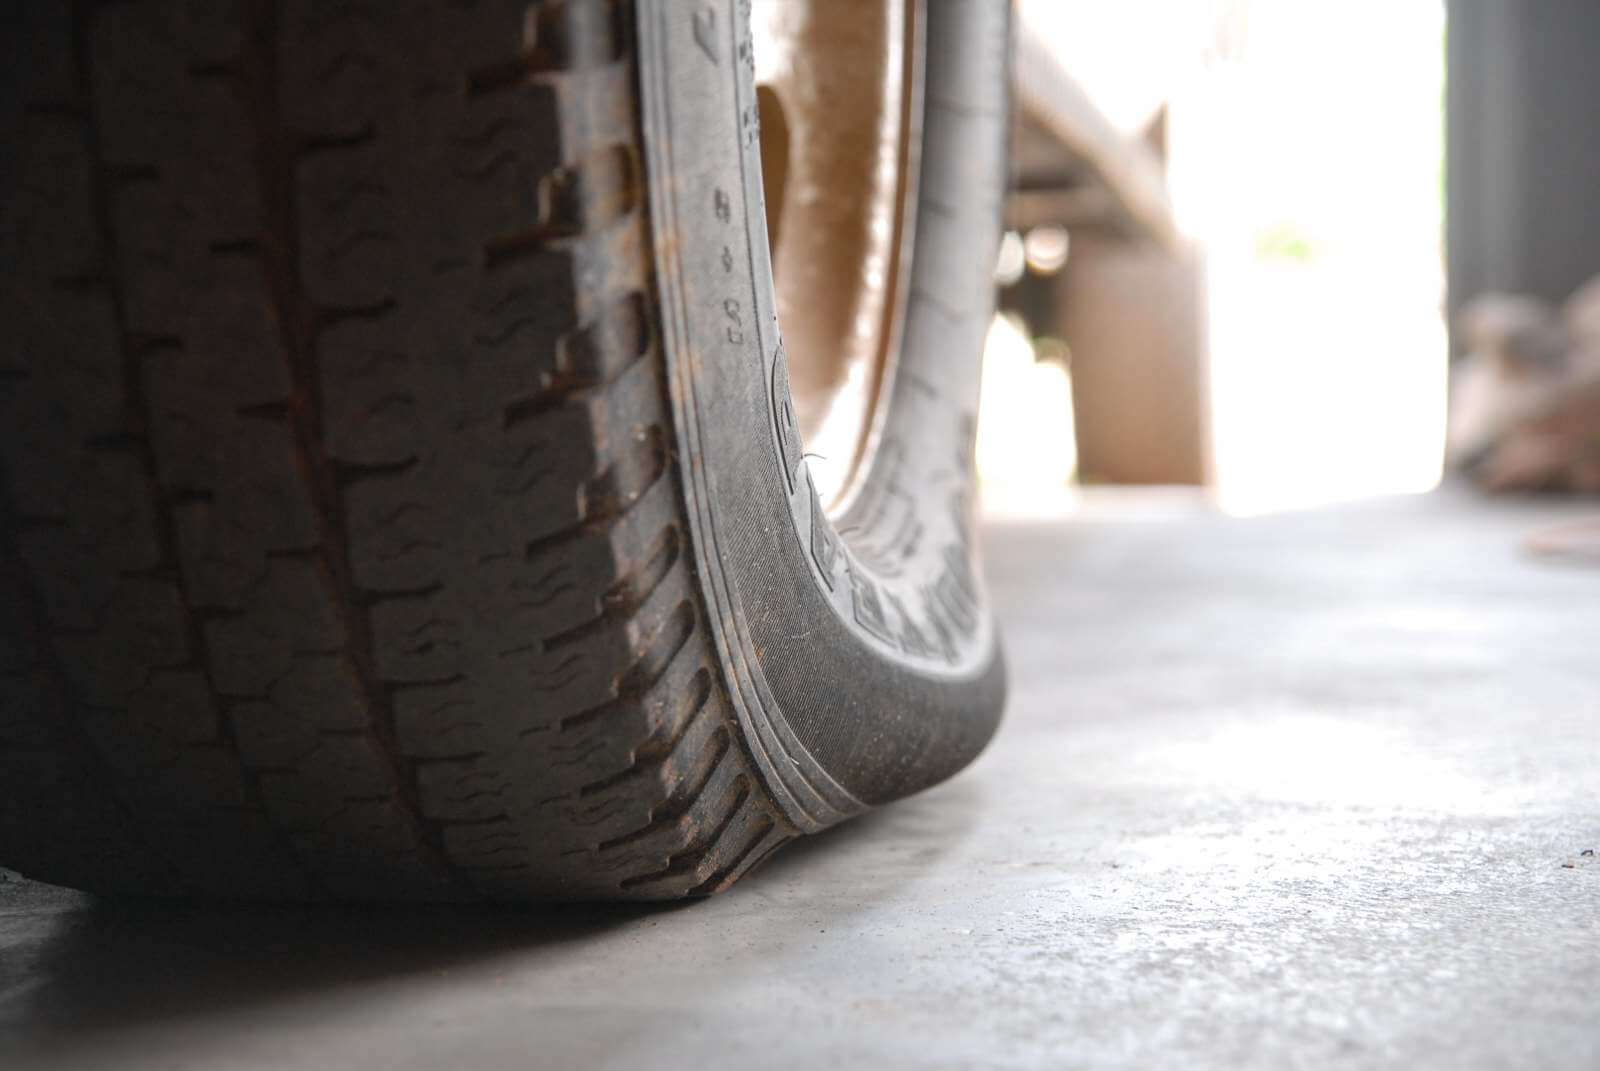 pneus baixa pressao Hábitos que estragam o carro: veja quais são os piores